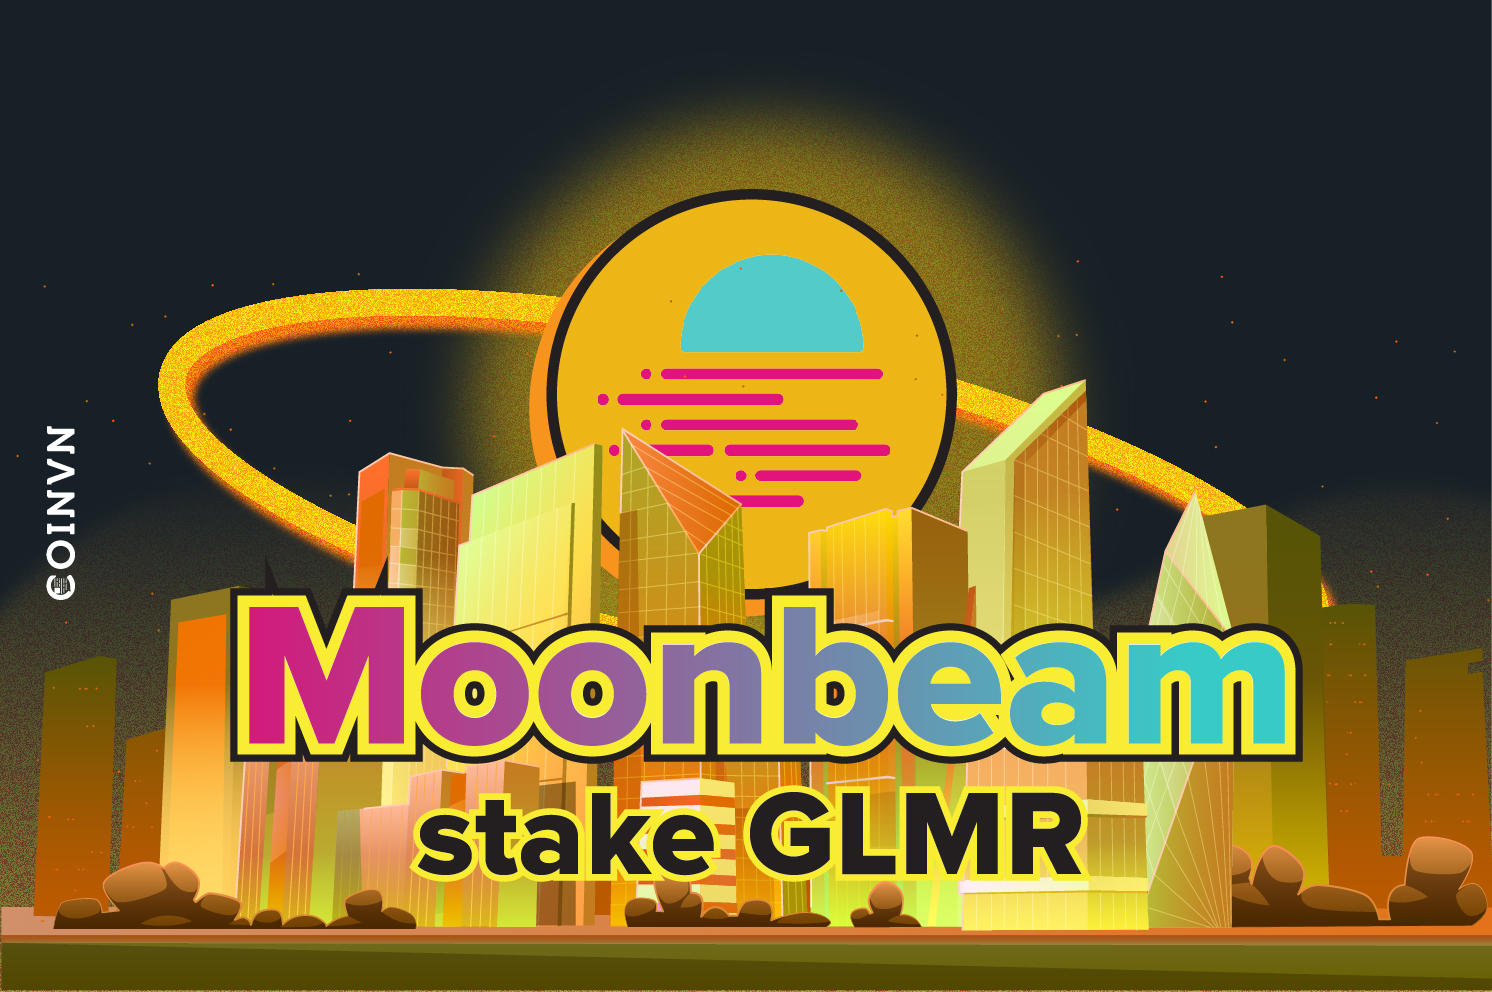 Huong dan stake GLMR tren Moonbeam chi tiet nhat - anh 1